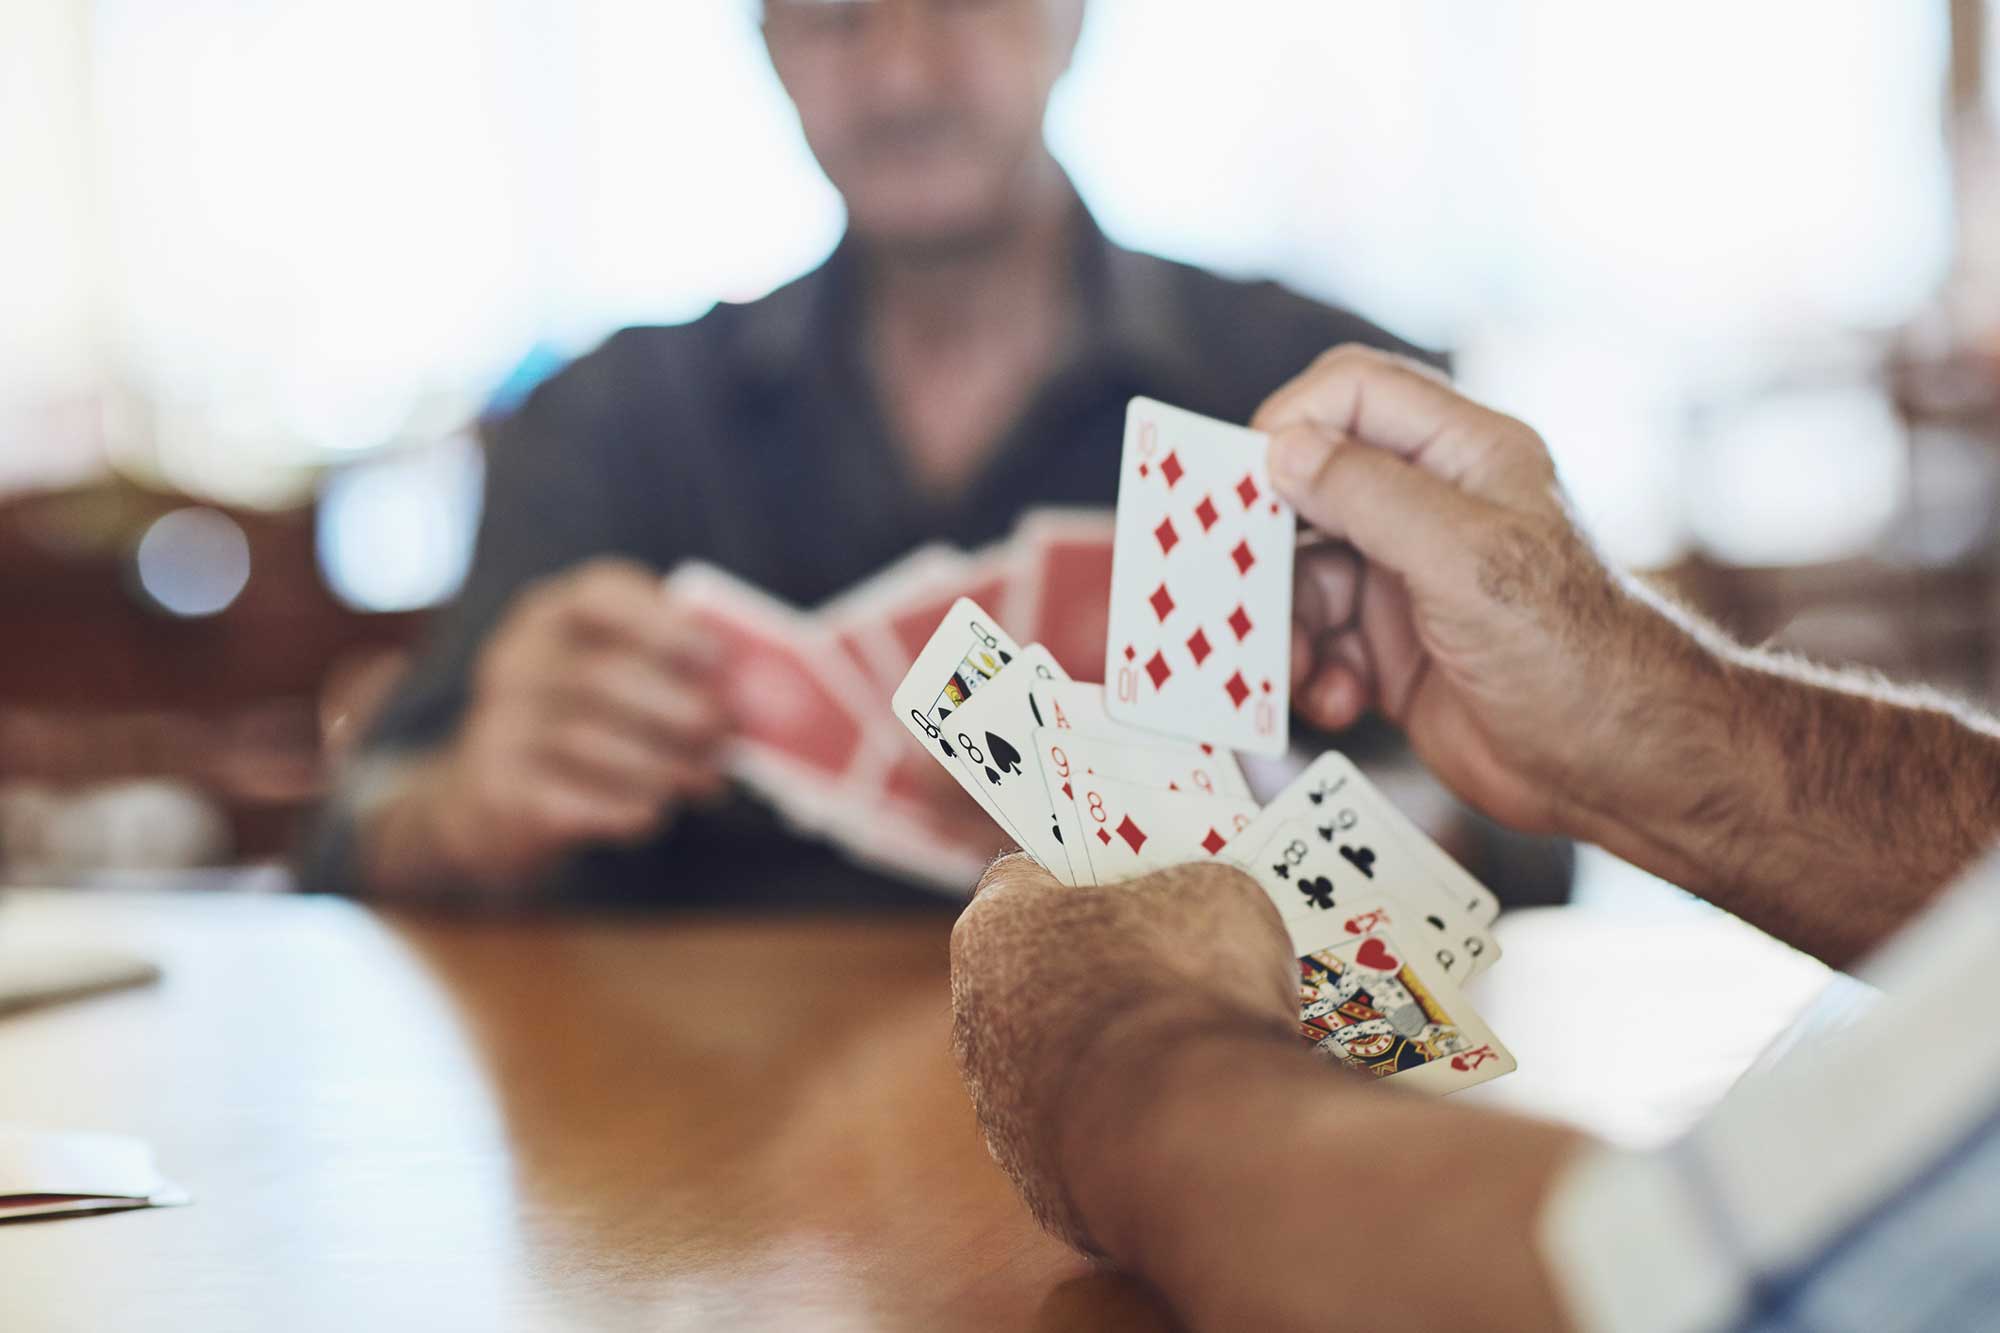 Personer spelar kort vid ett träbord